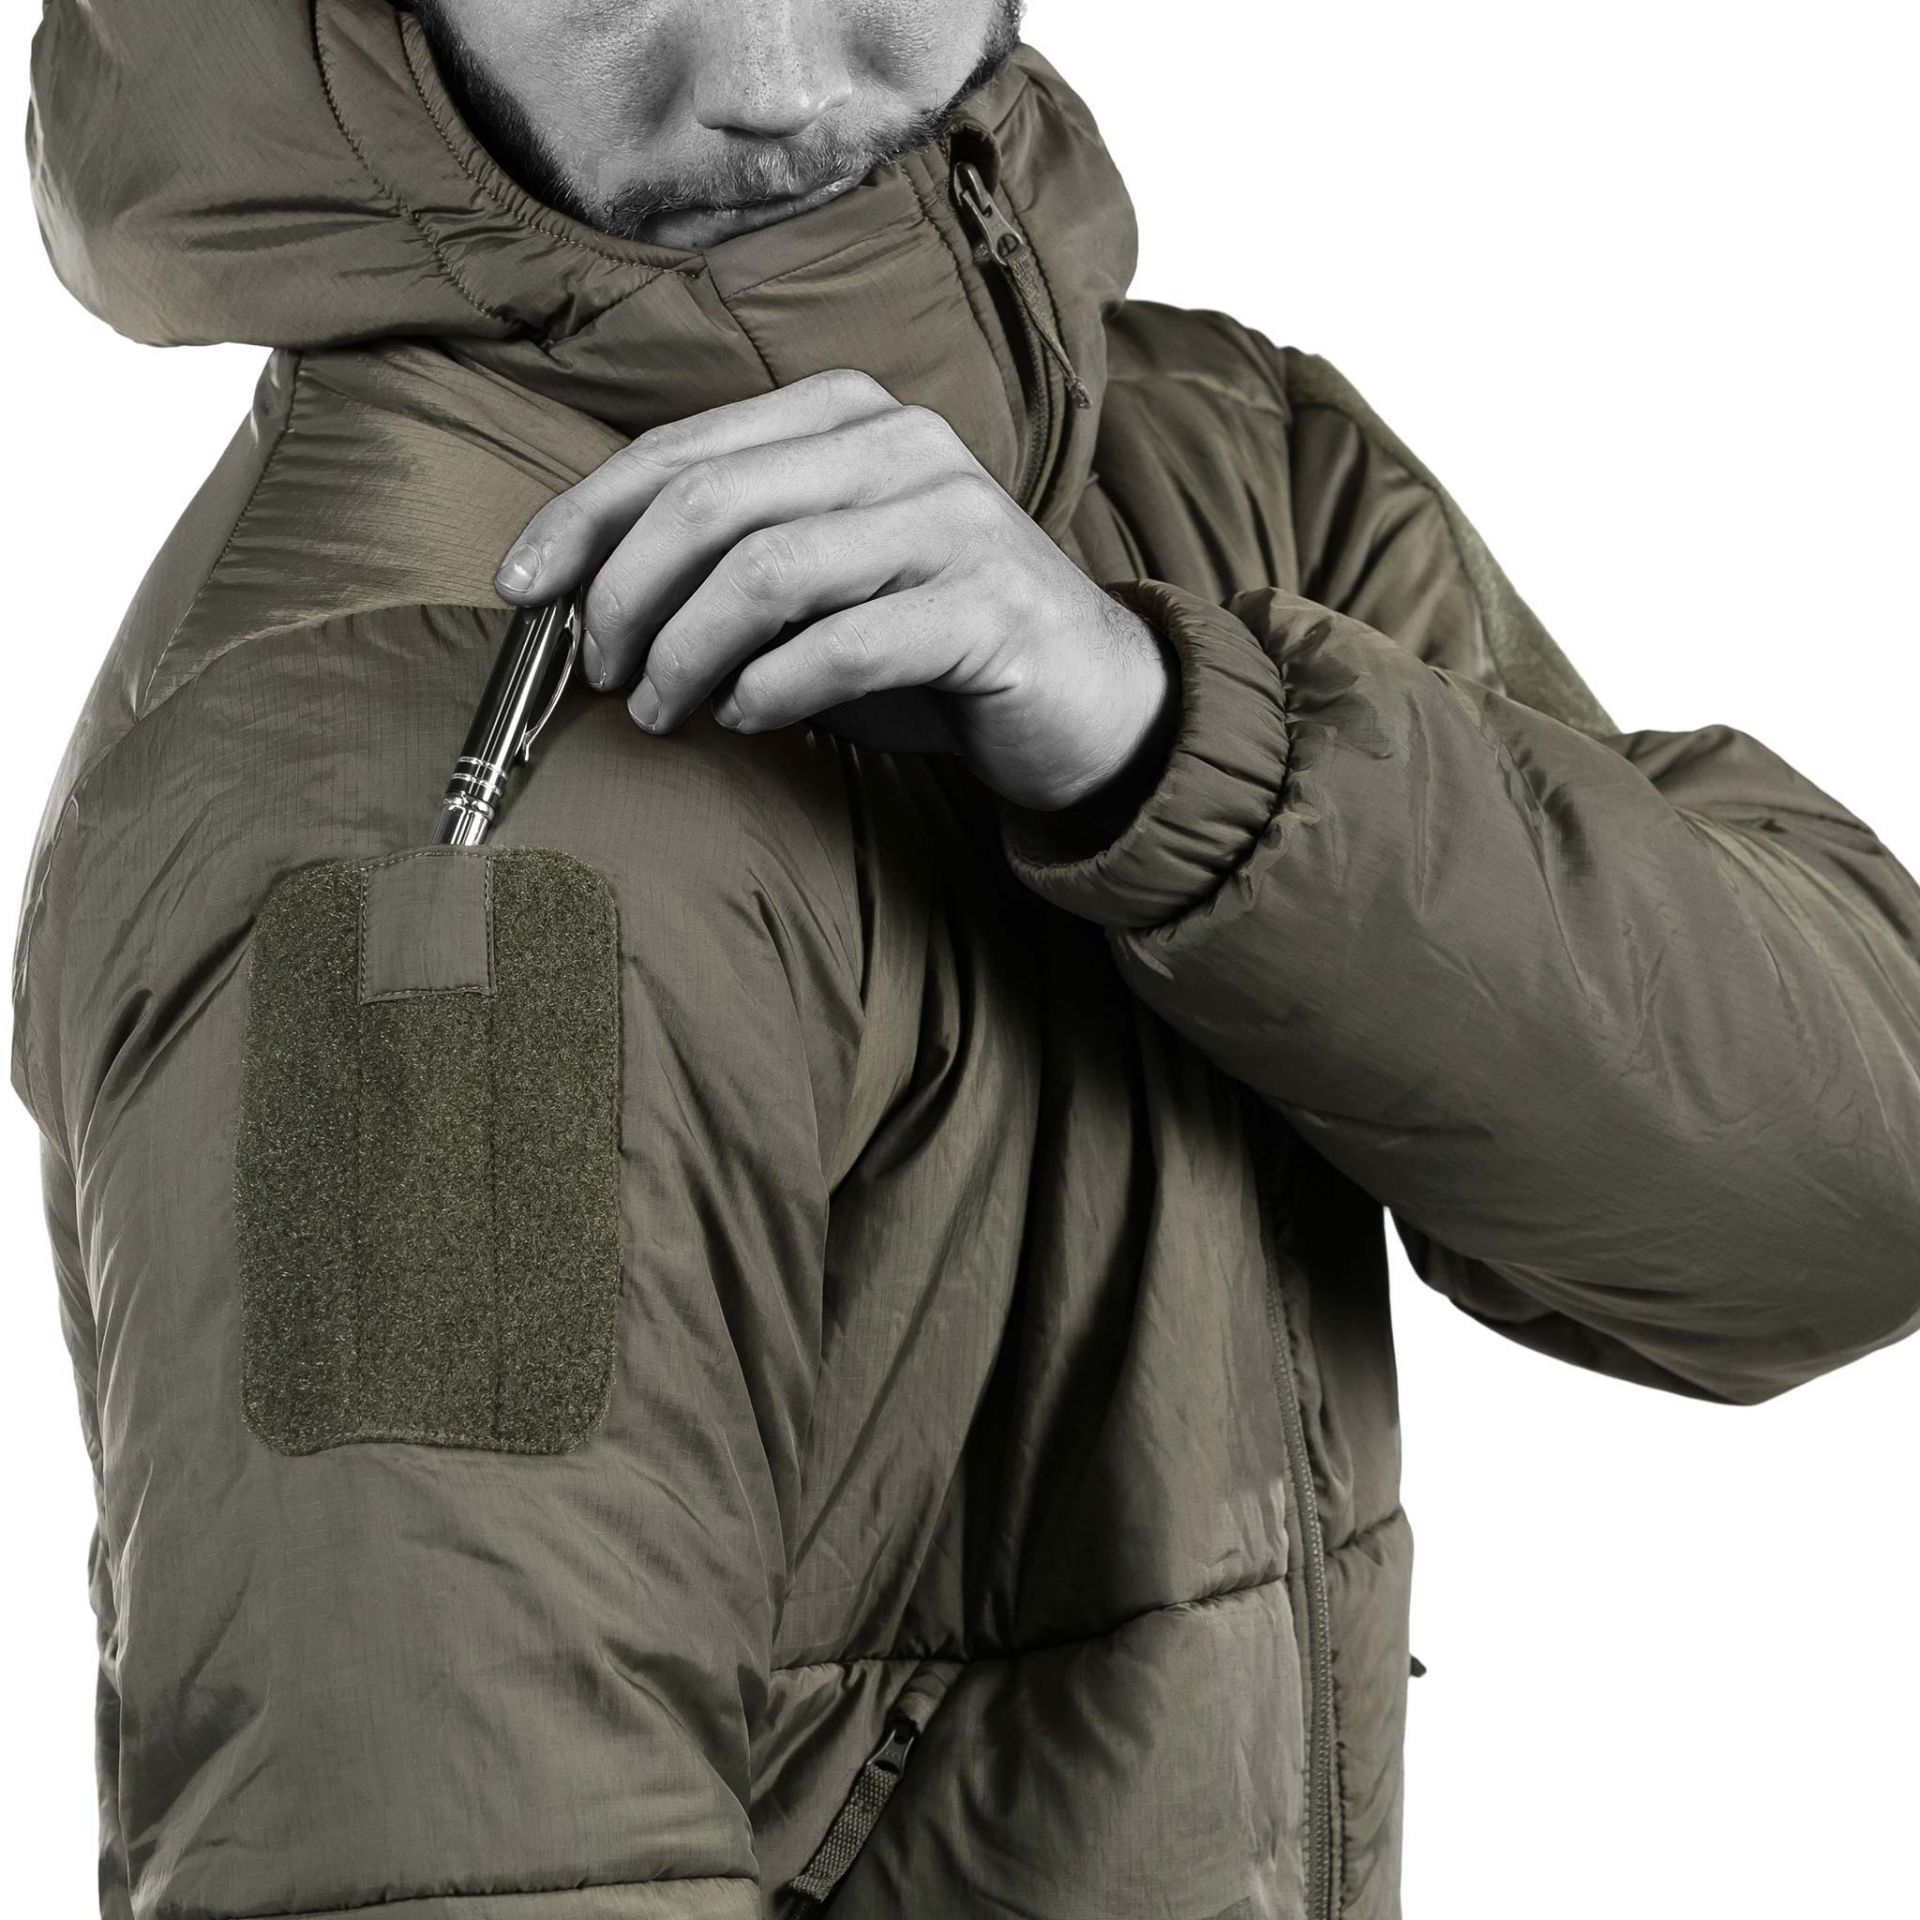 con dimensioni ridotte UF Pro Delta Compac giacca tattica invernale antivento impermeabile 